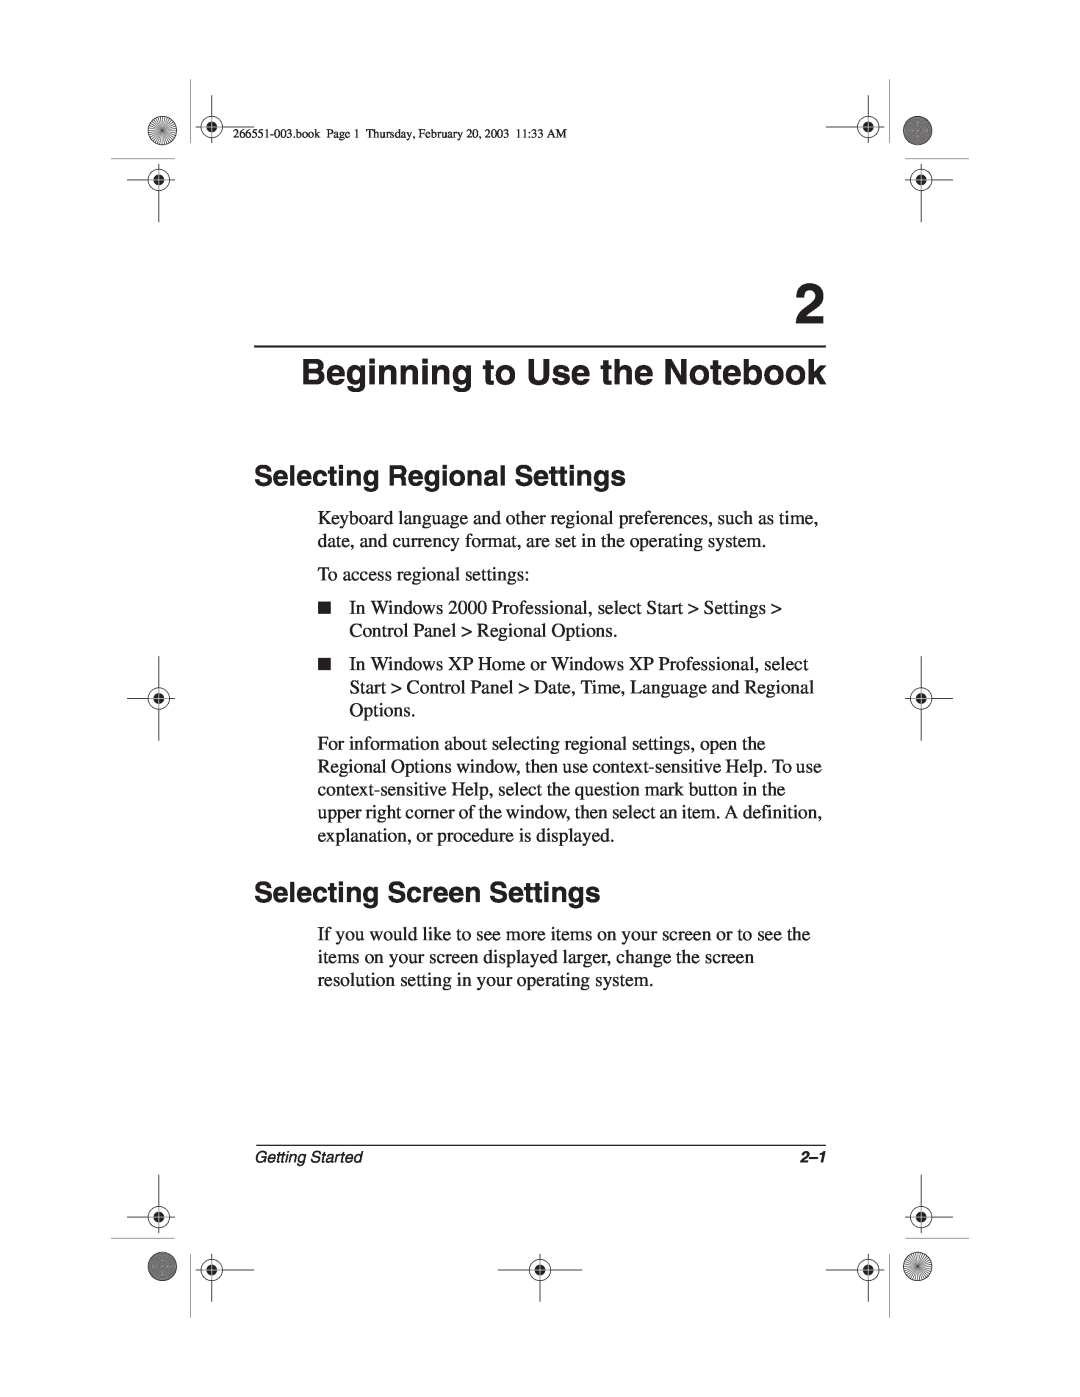 HP 2853AP, 2899AP, 2897AP, 2898AP manual Beginning to Use the Notebook, Selecting Regional Settings, Selecting Screen Settings 